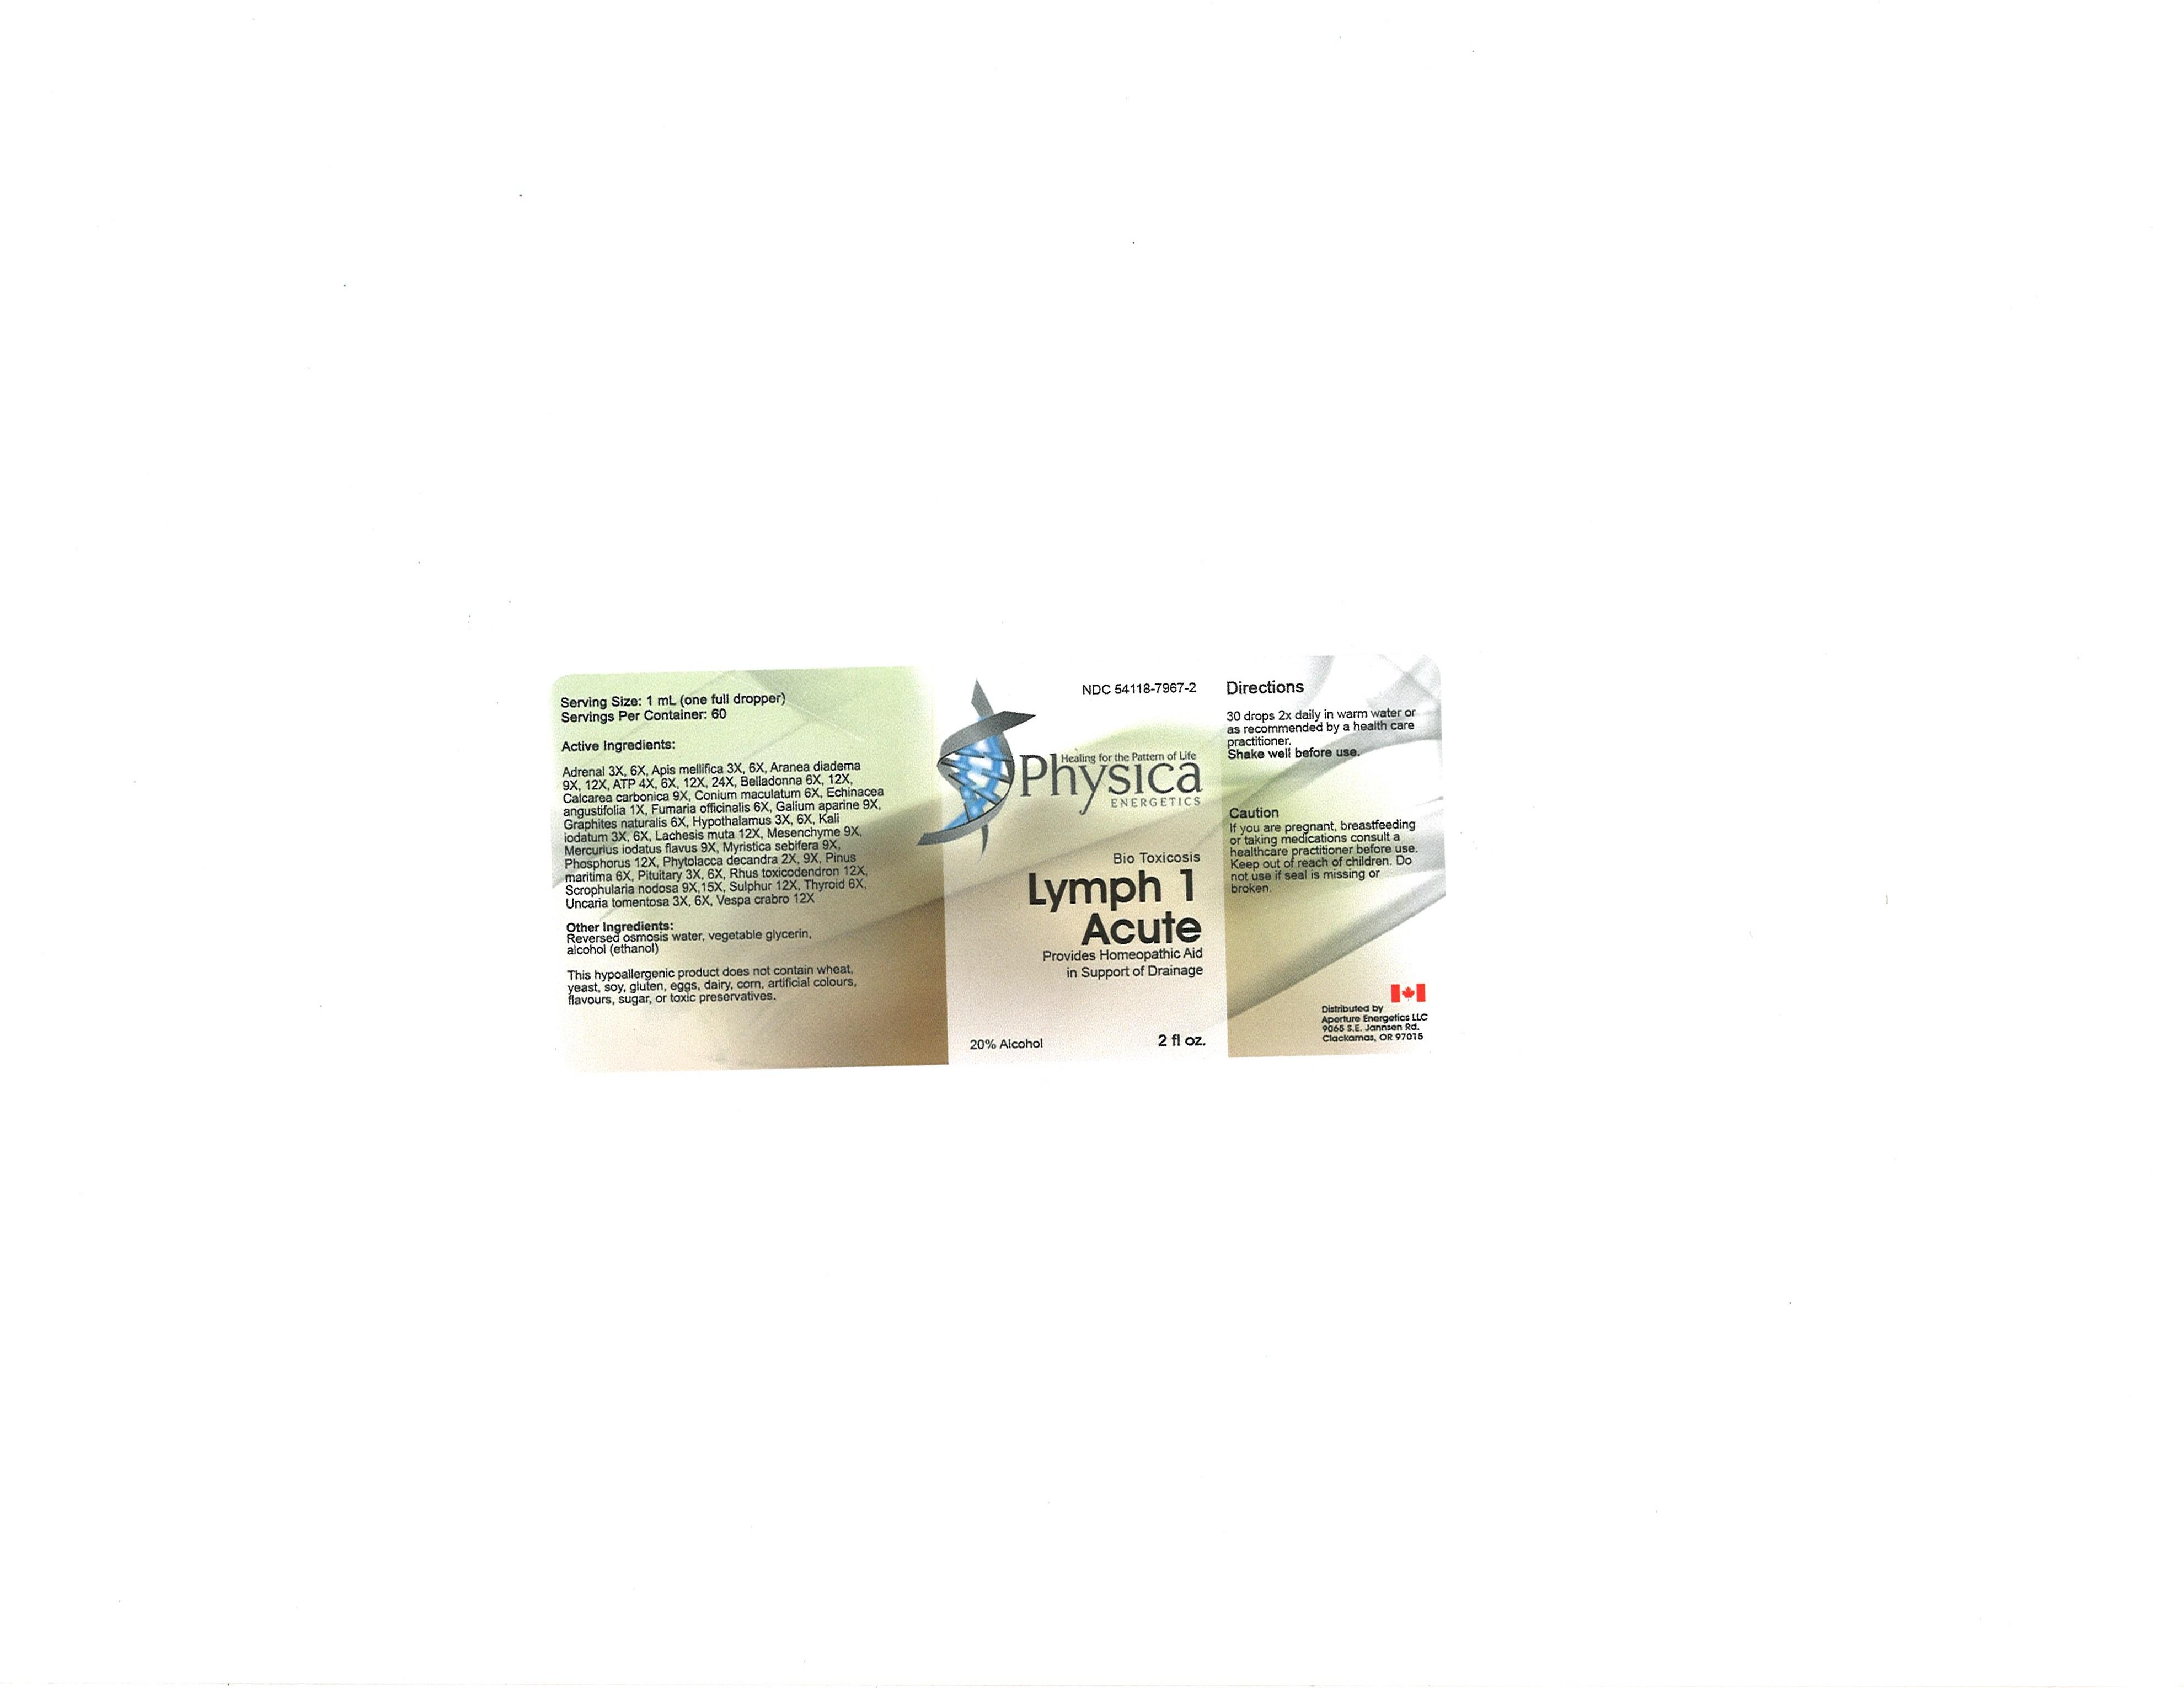 Lymph 1 Acute (Adrenal, Apis Mellifica ) Solution/ Drops [Abco Laboratories, Inc.]